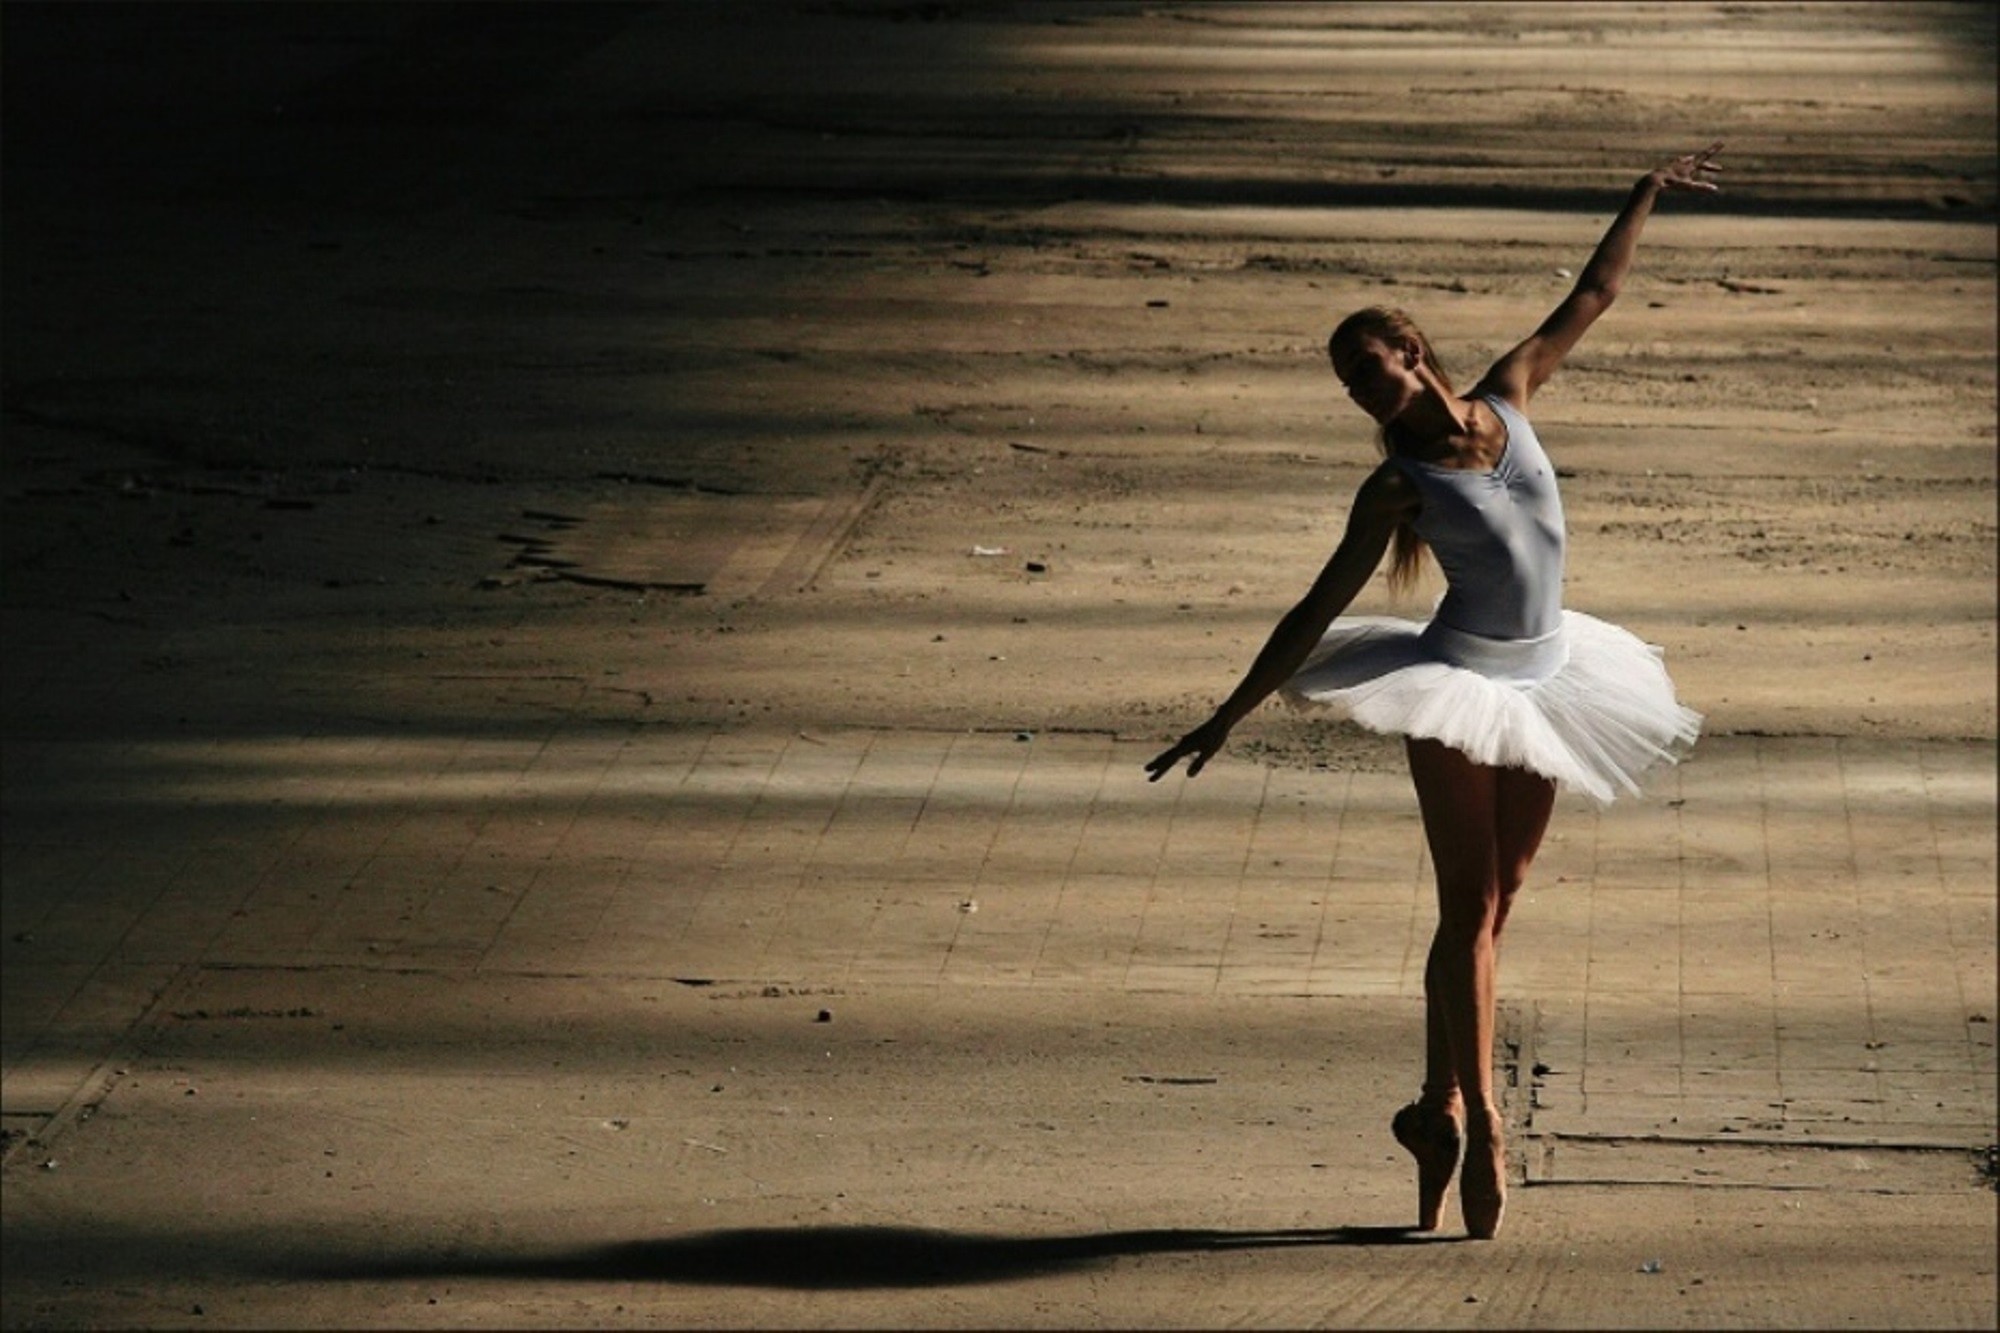 バレエの壁紙,バレエダンサー,バレエ,ダンス,踊り子,履物